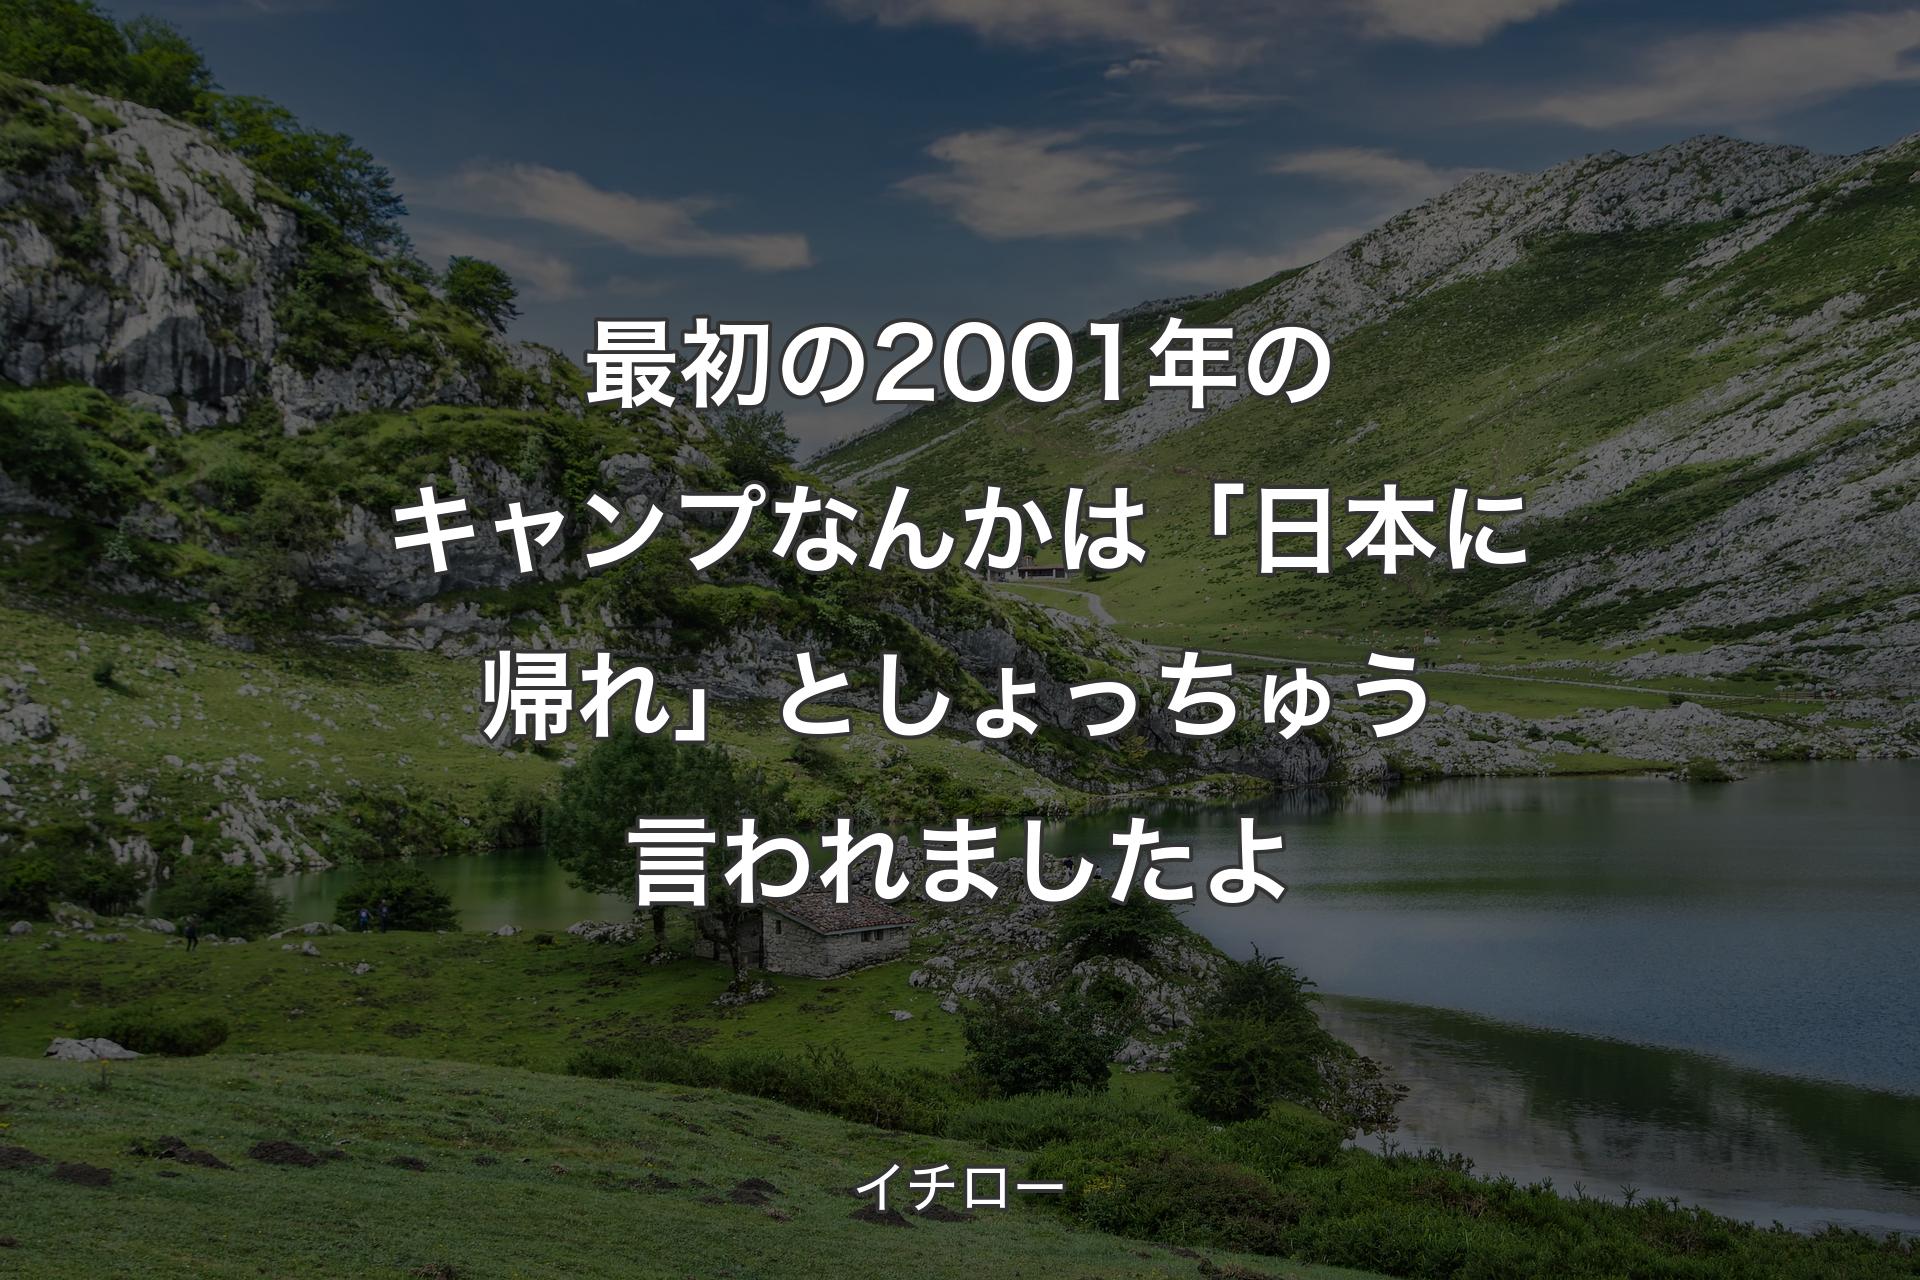 【背景1】最初の2001年のキャンプなんかは「日本に帰れ」としょっちゅう言われましたよ - イチロー